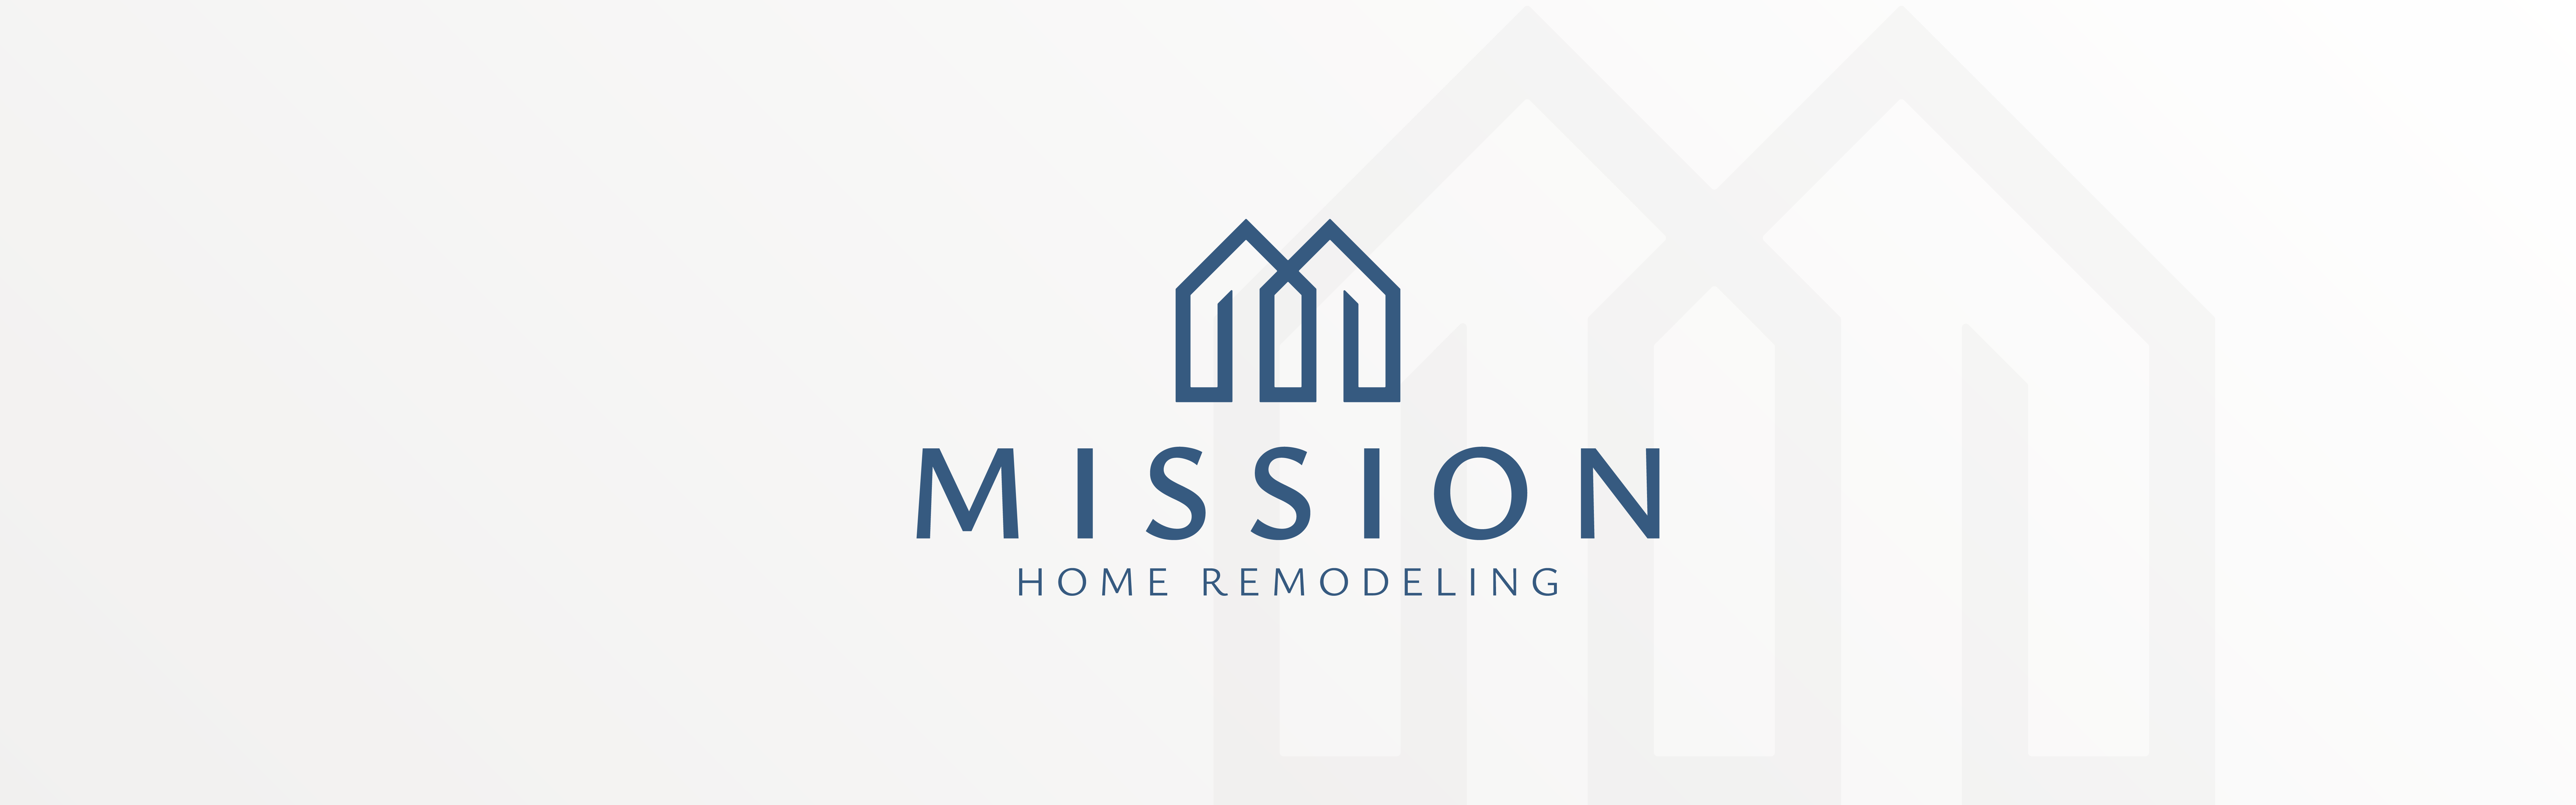 Mission Home Remodeling logo design